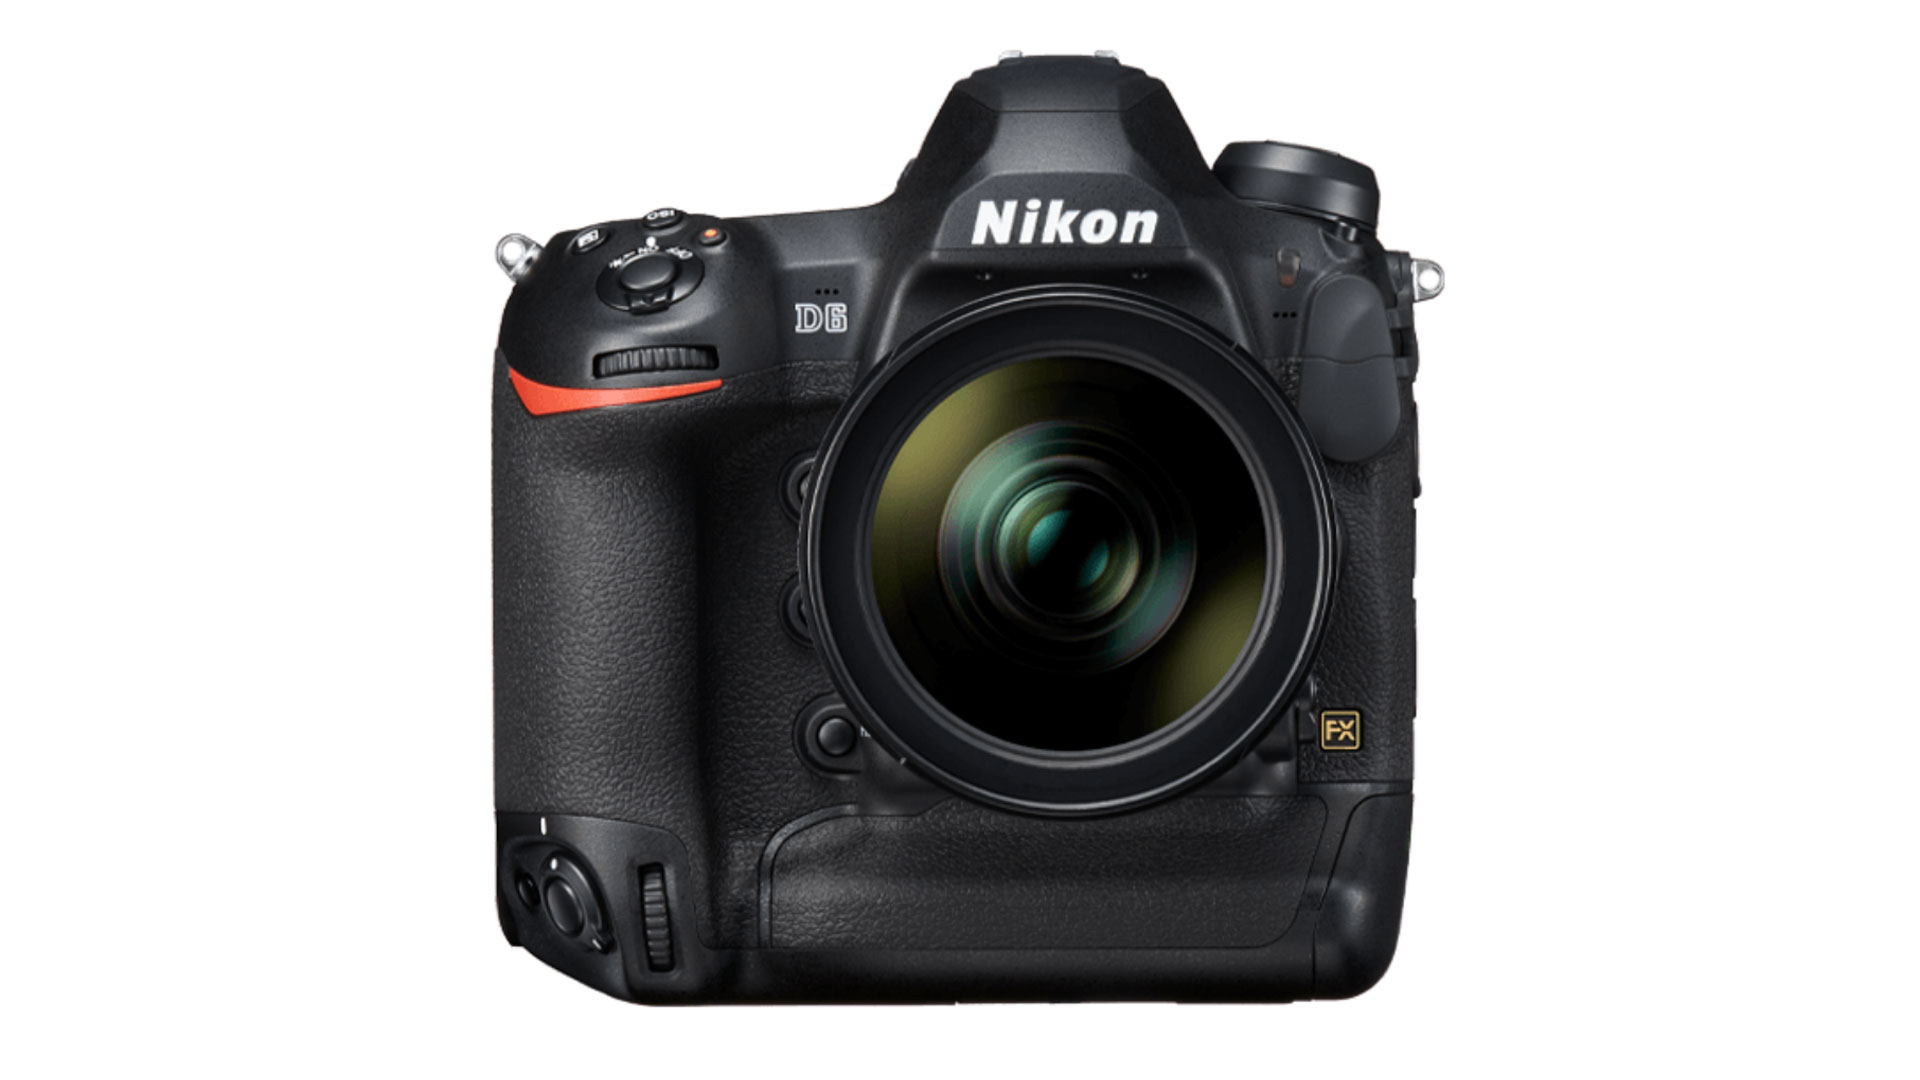 The Nikon D6 DSLR